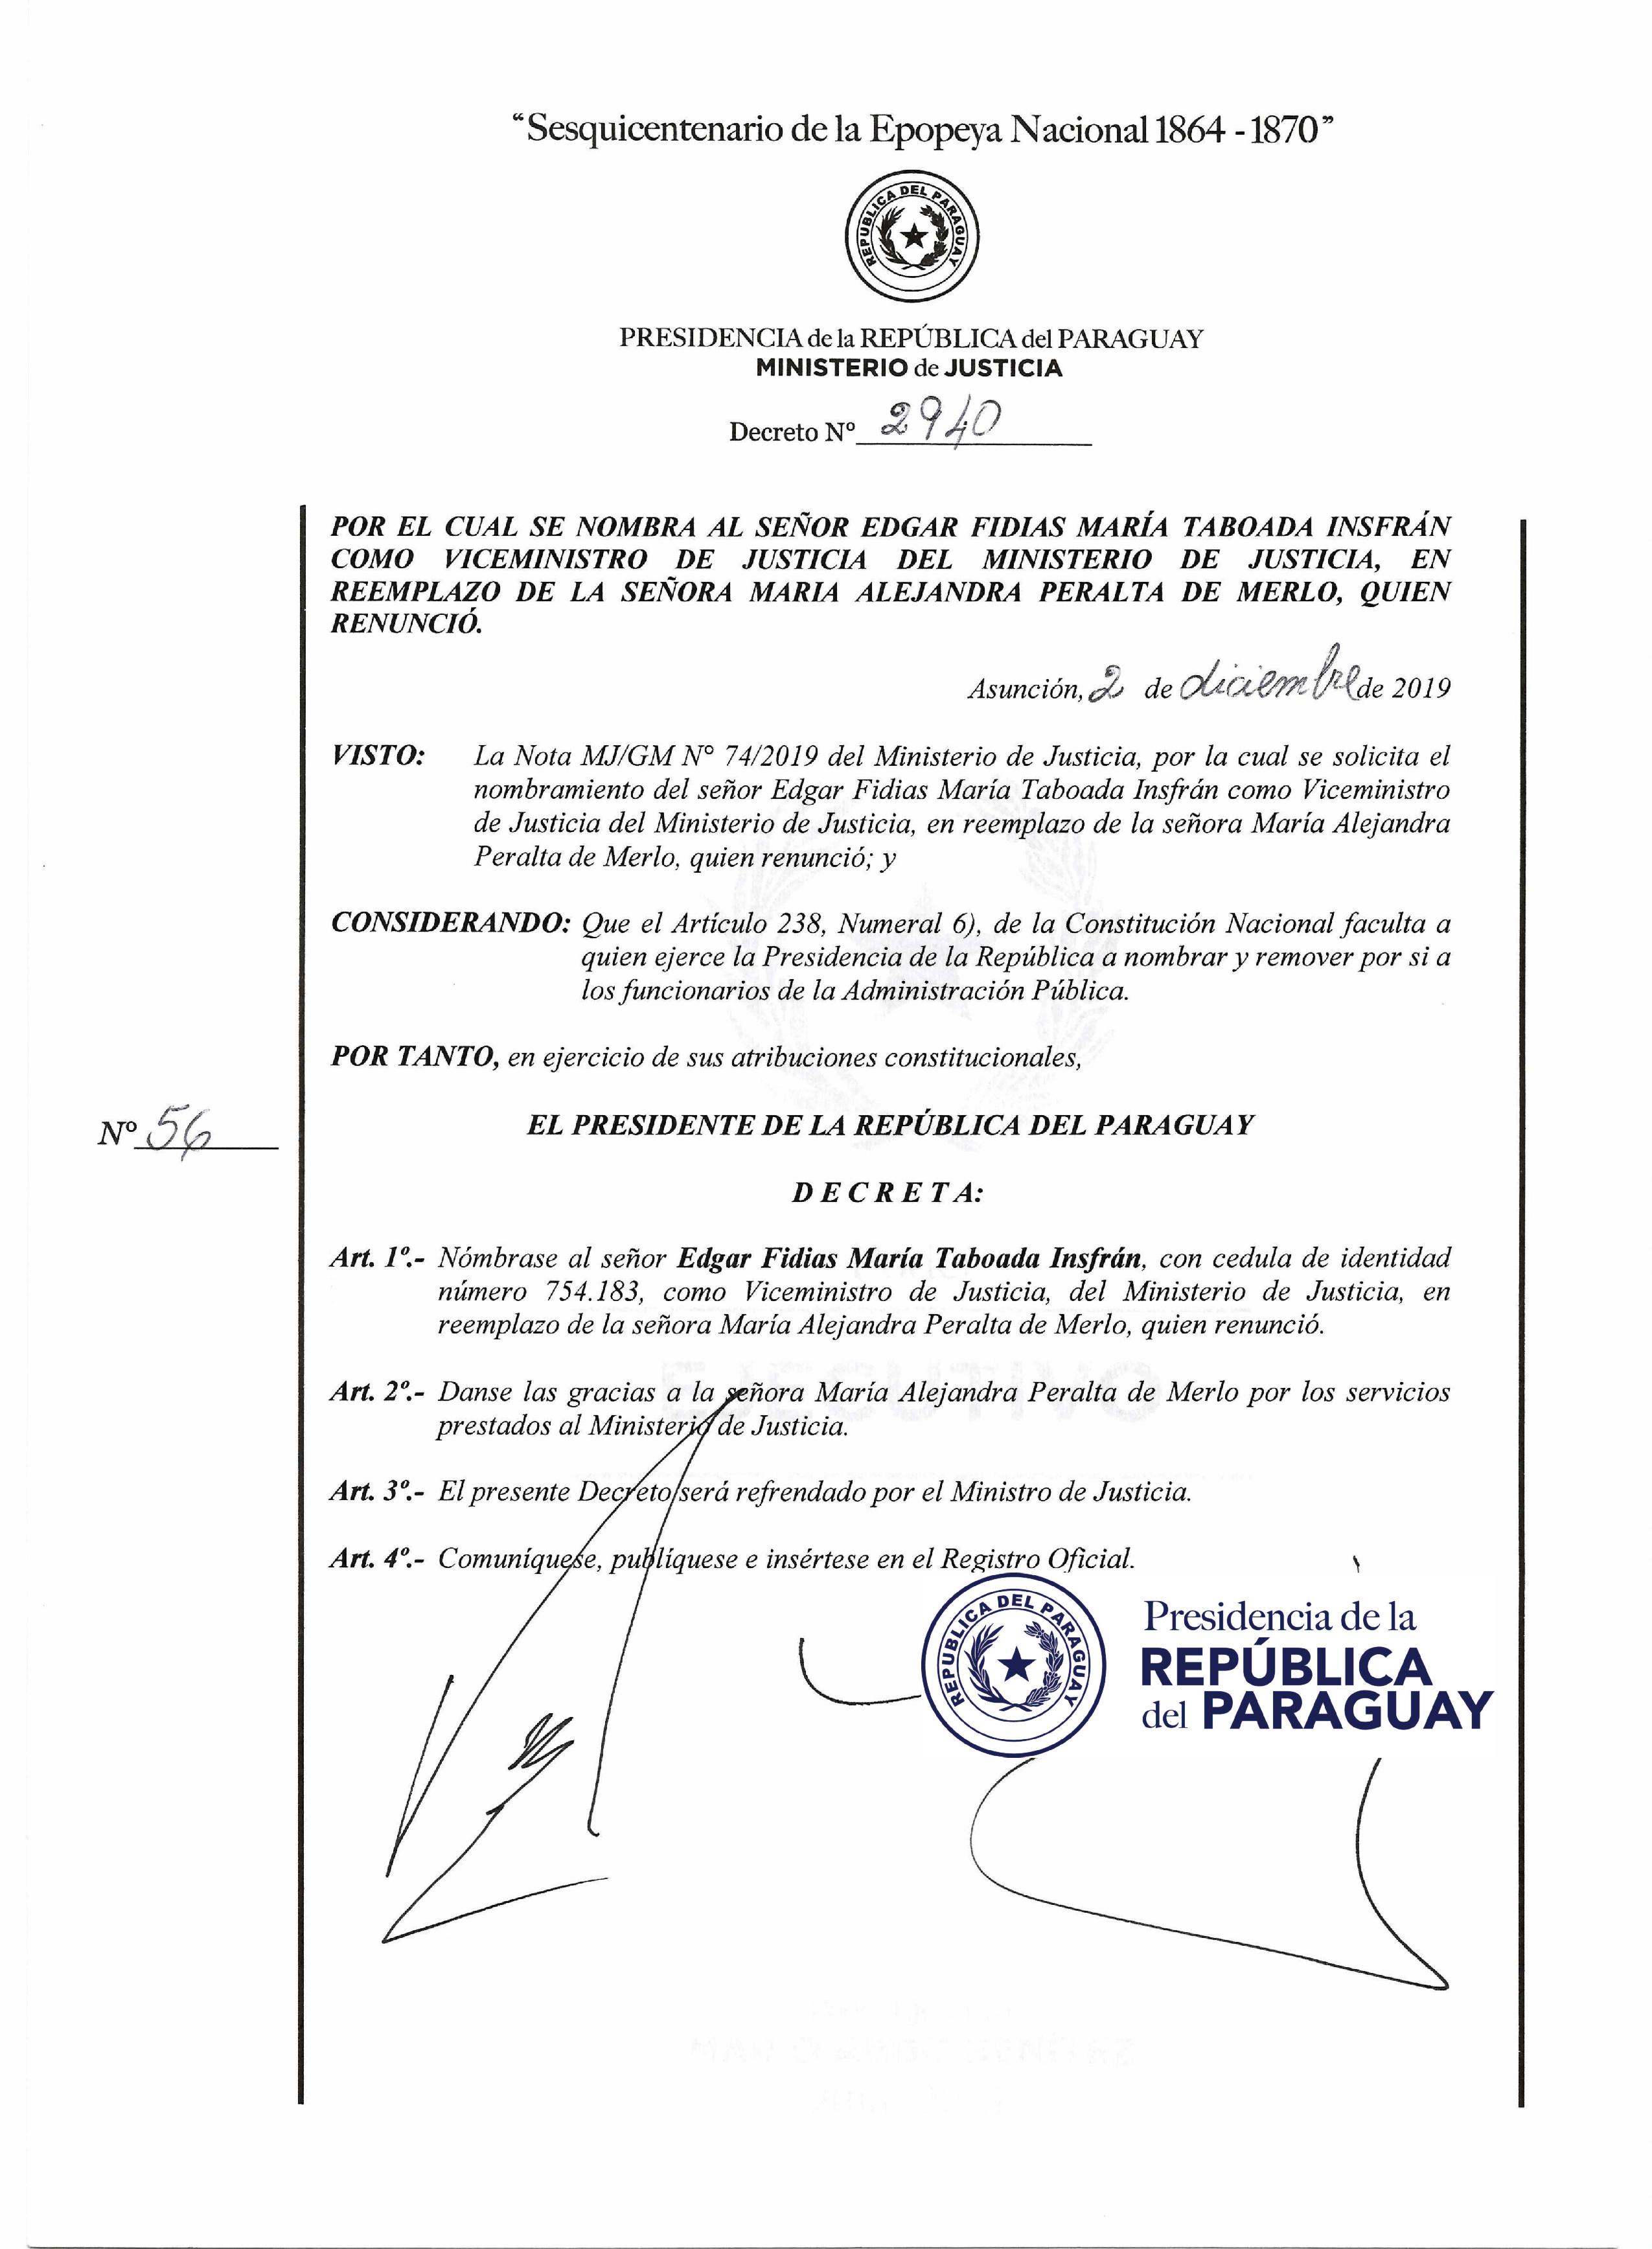 Decreto Nº 2940, por el que el presidente Mario Abdo nombra a Édgar María Taboada Ynsfrán en reemplazo de María Alejandra Peralta de Merlo.